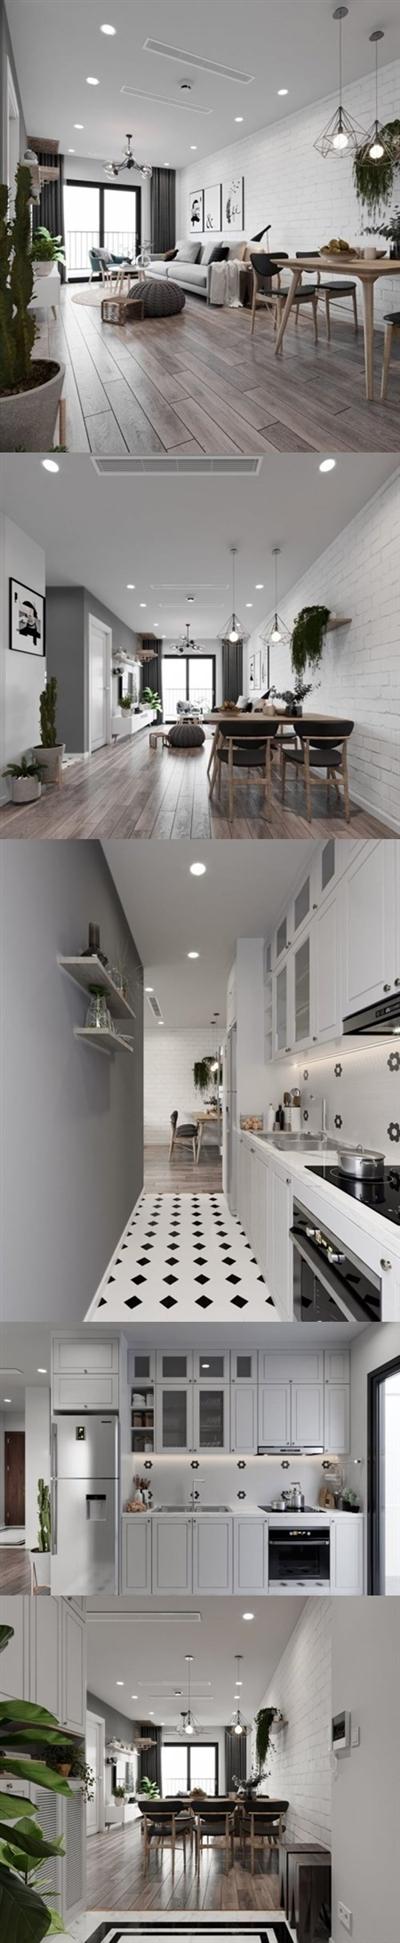 Kitchen - Livingroom Scene